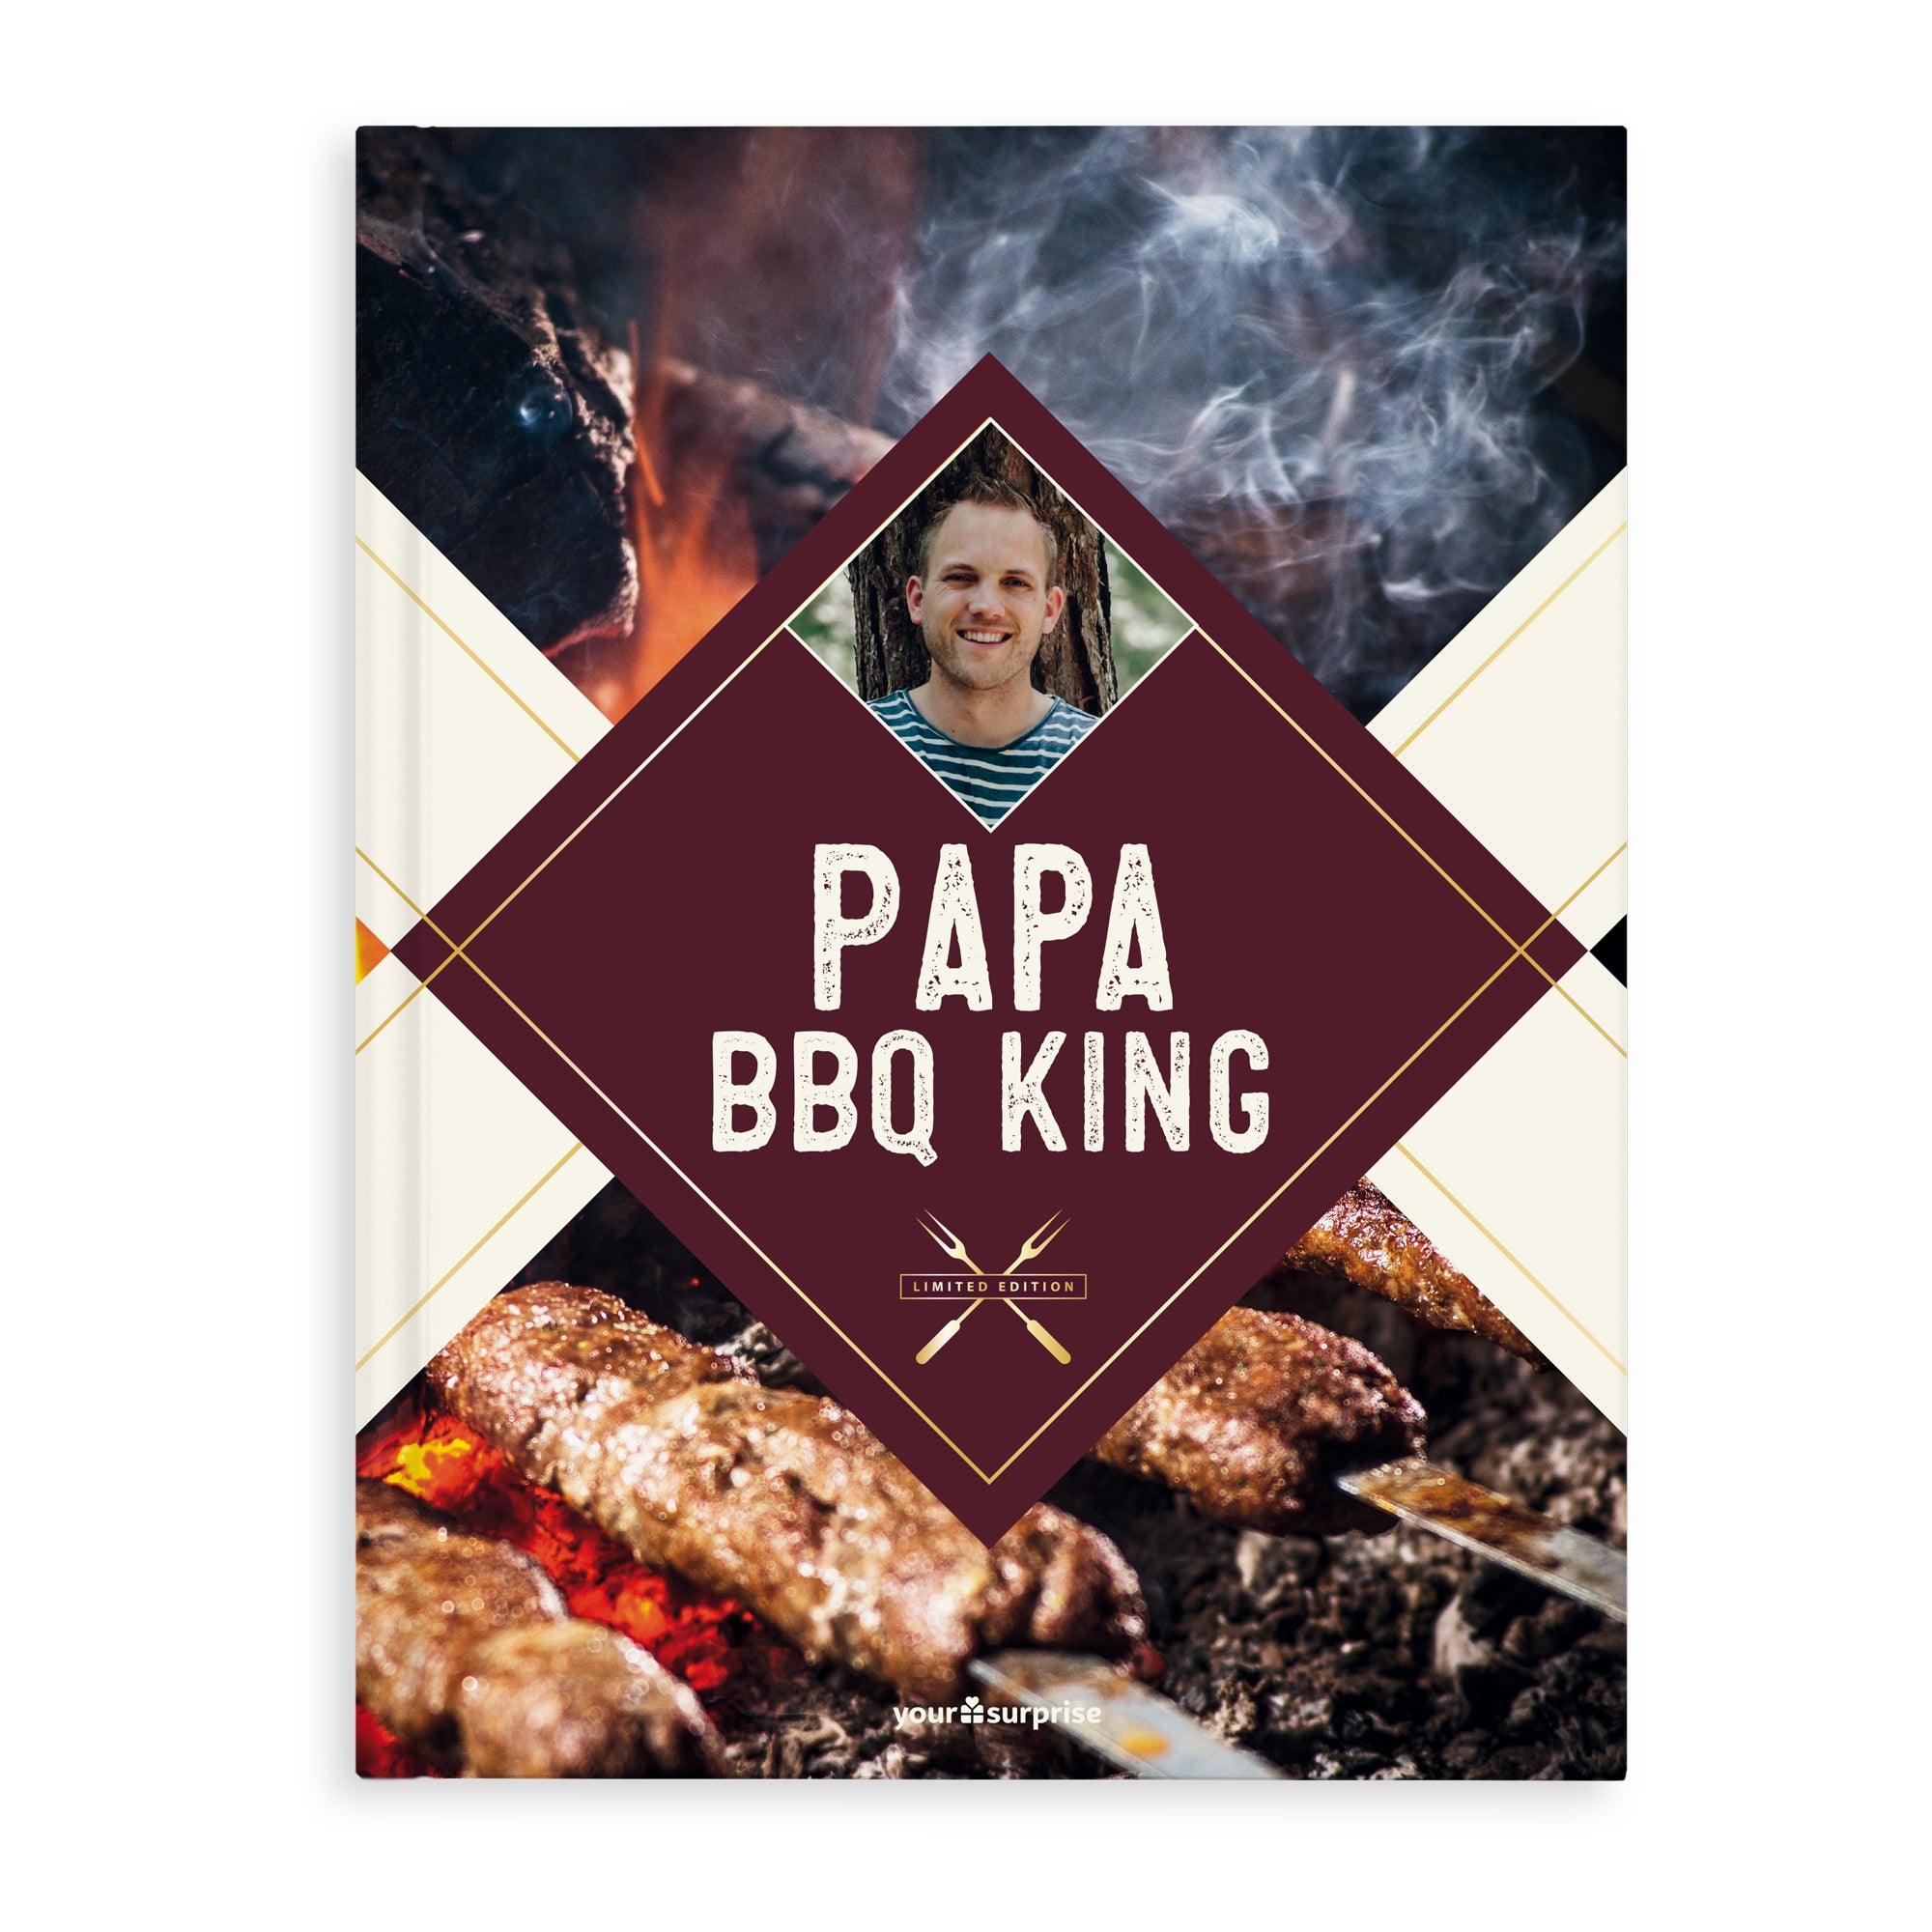 Gepersonaliseerd barbecue kookboek - BBQ King/Queen